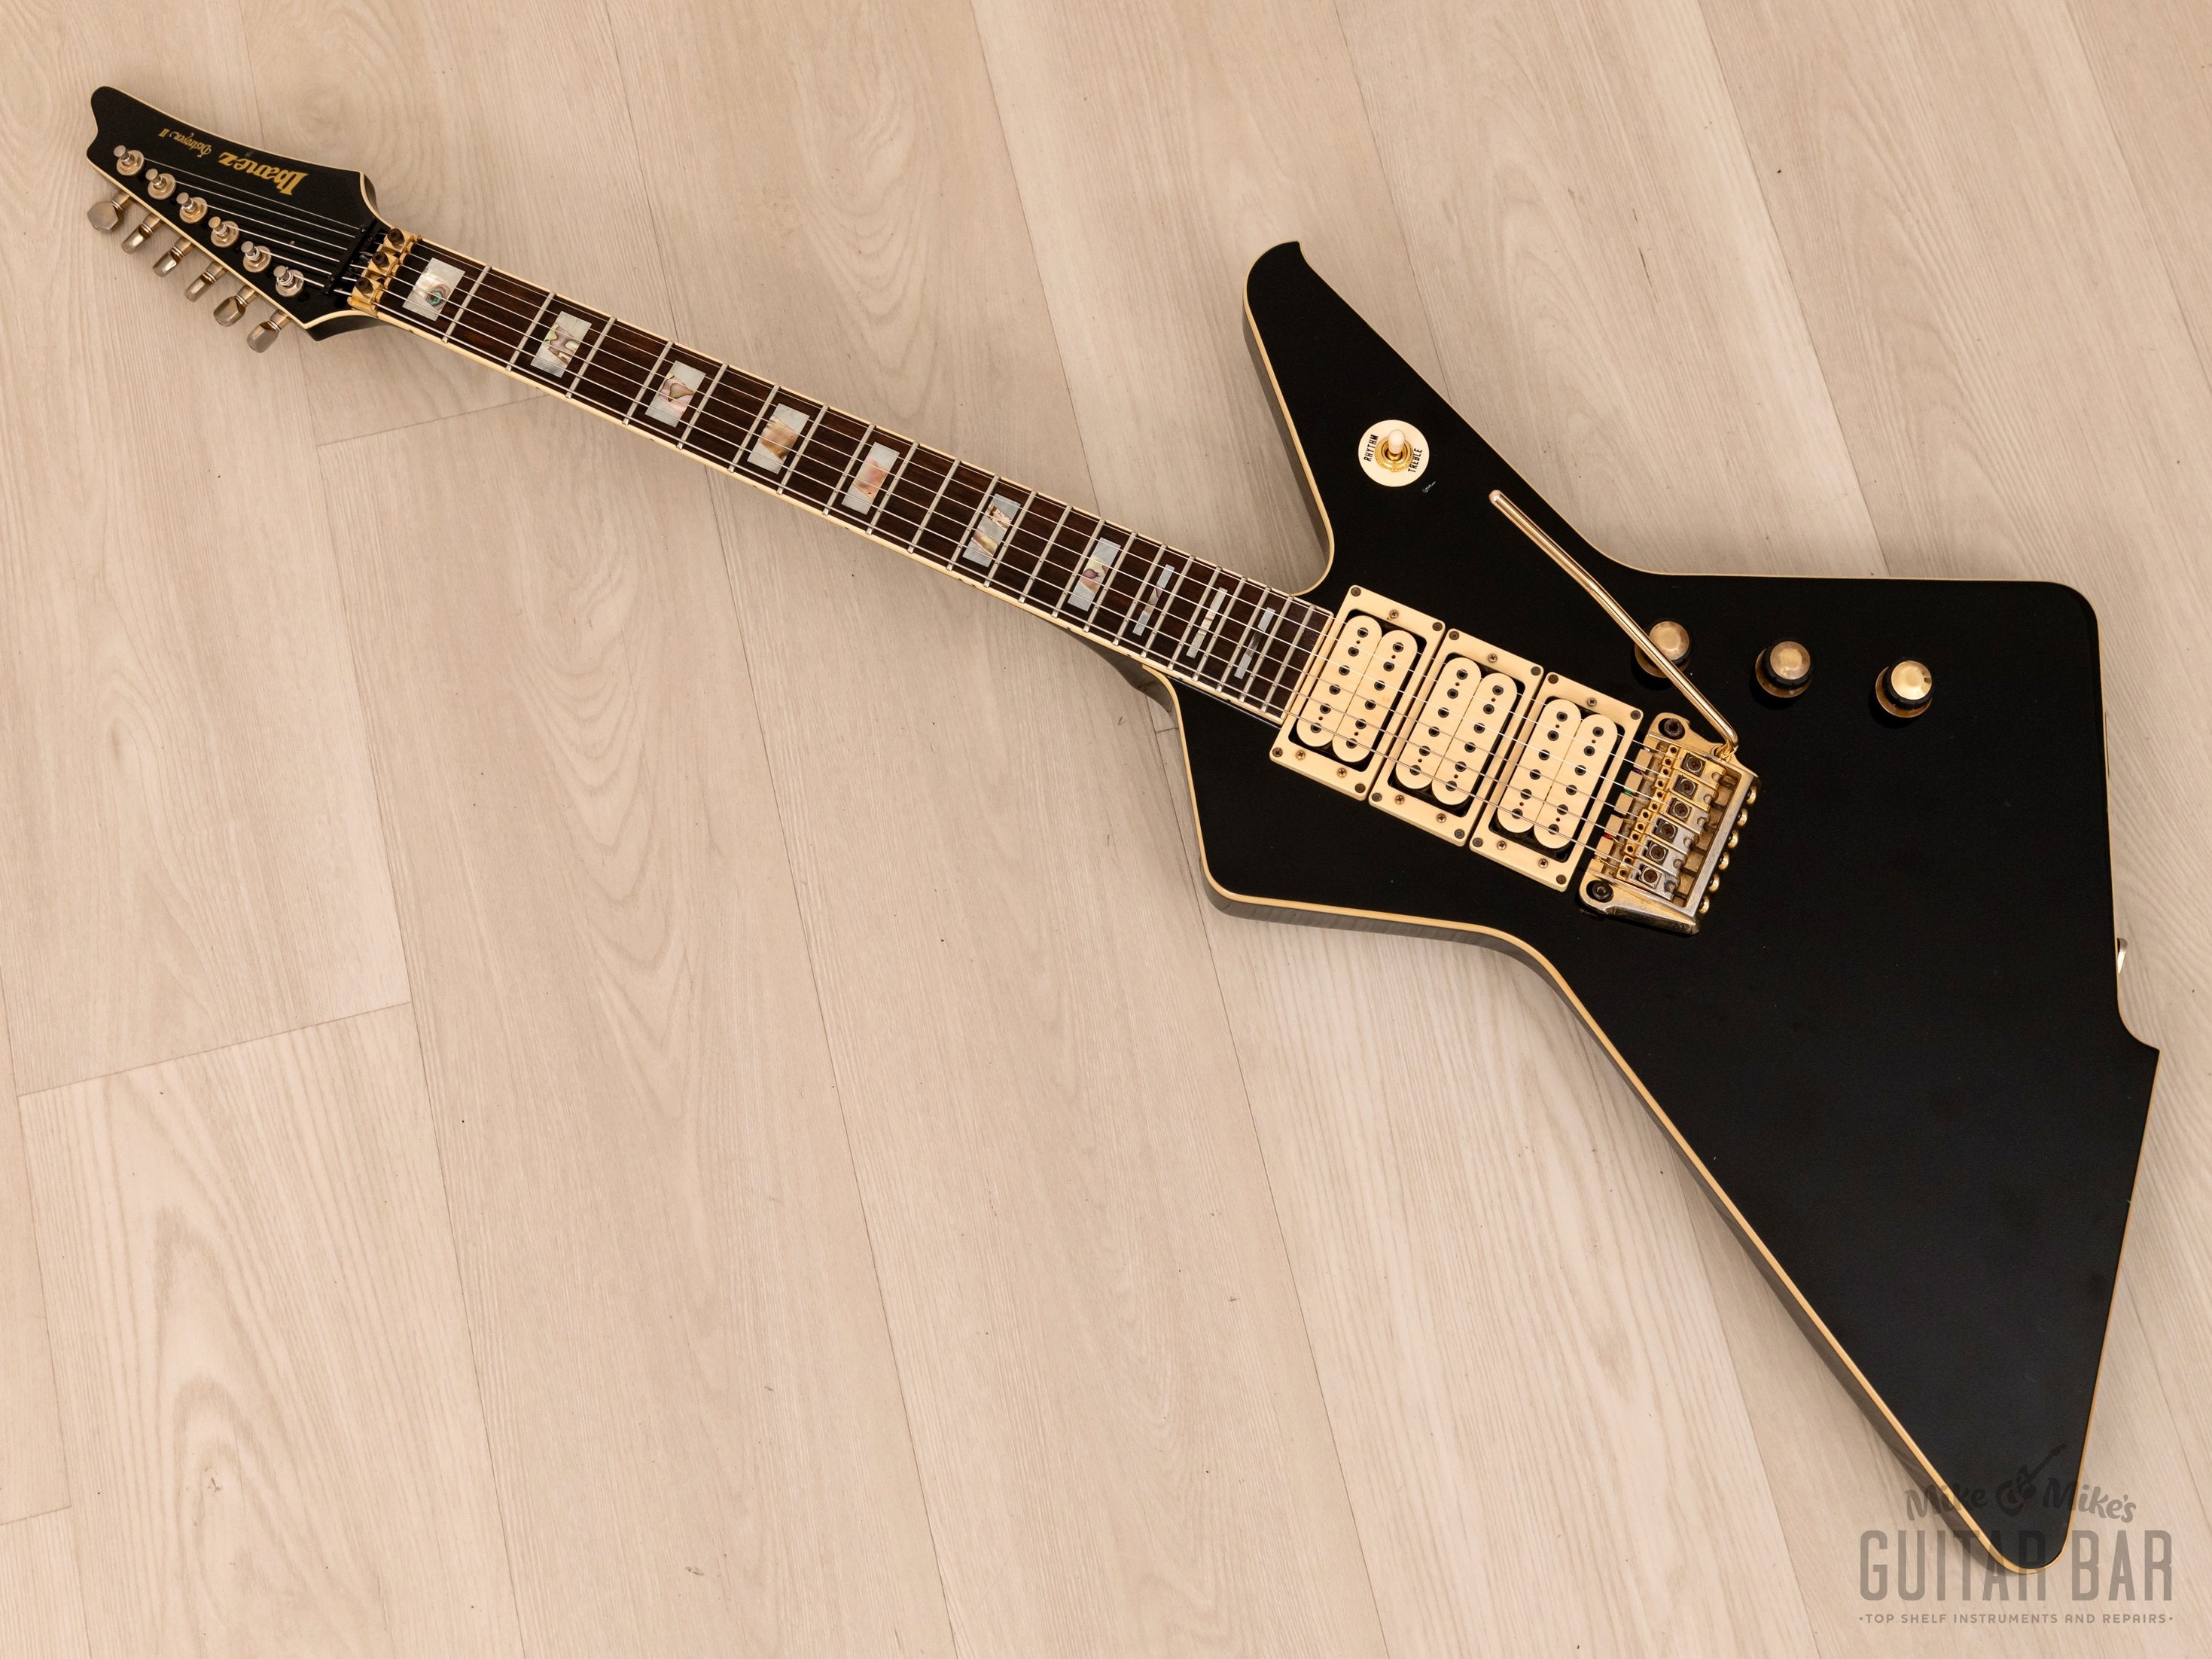 1984 Ibanez Destroyer II DT555 Vintage Electric Guitar Black 100% Original w/ Case, Japan